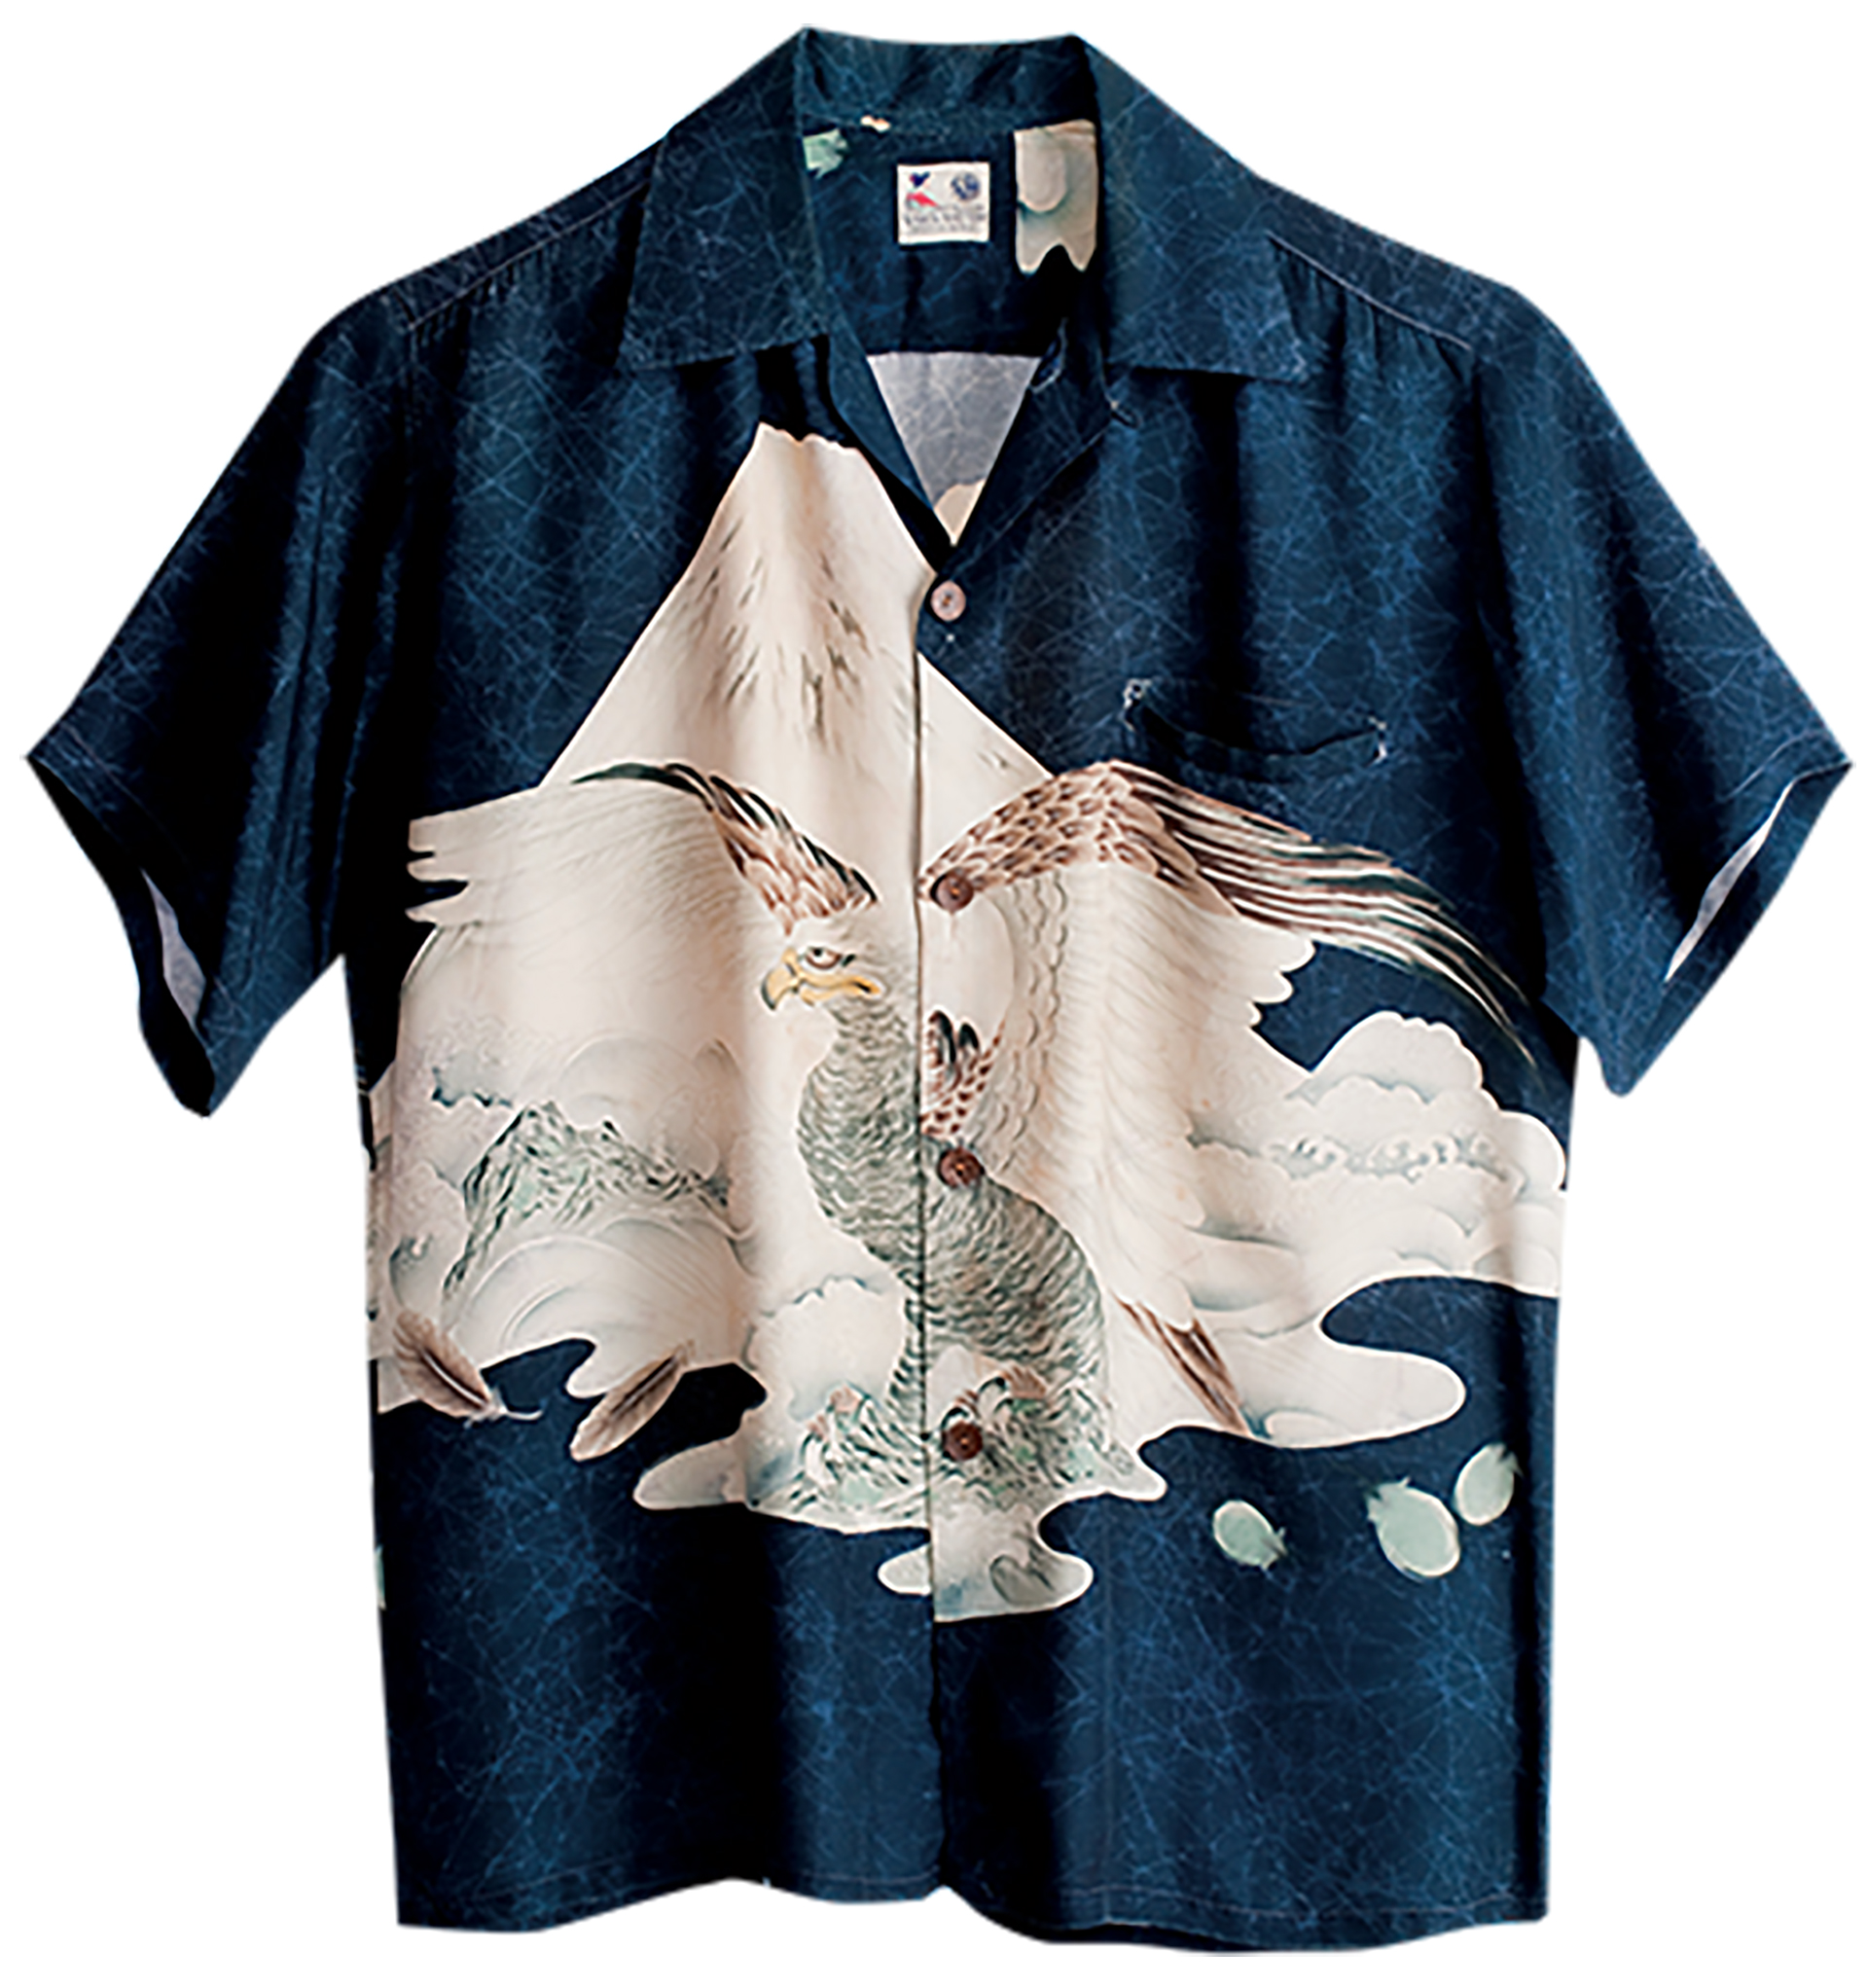 ヴィンテージアロハシャツの魅力　COLLECTION by SUN SURF